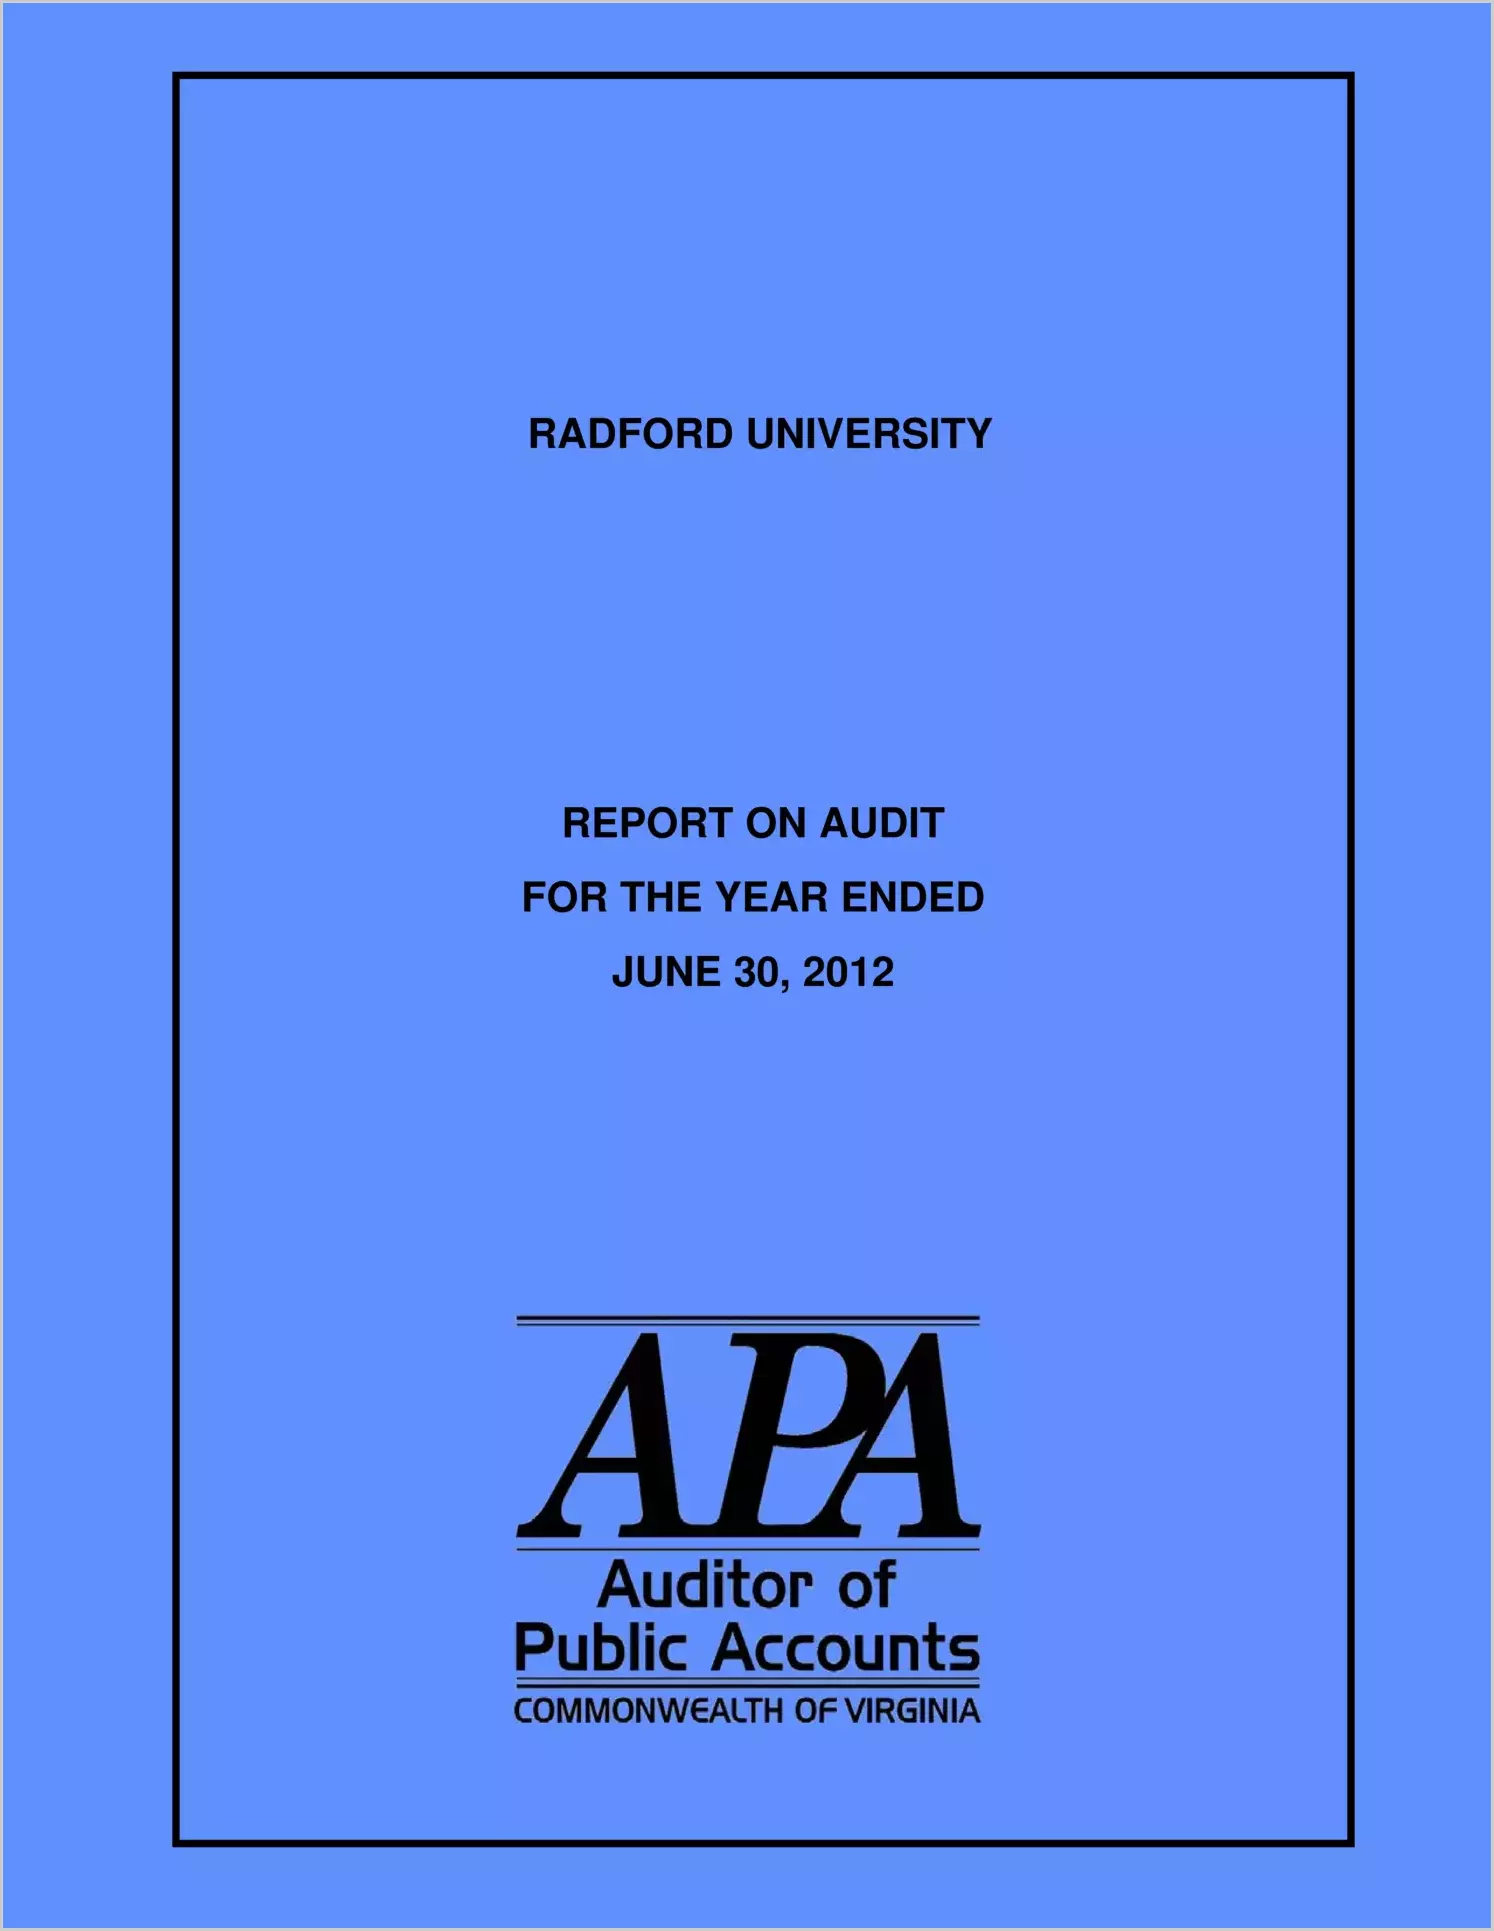 Radford University report on audit for year ending June 30, 2012